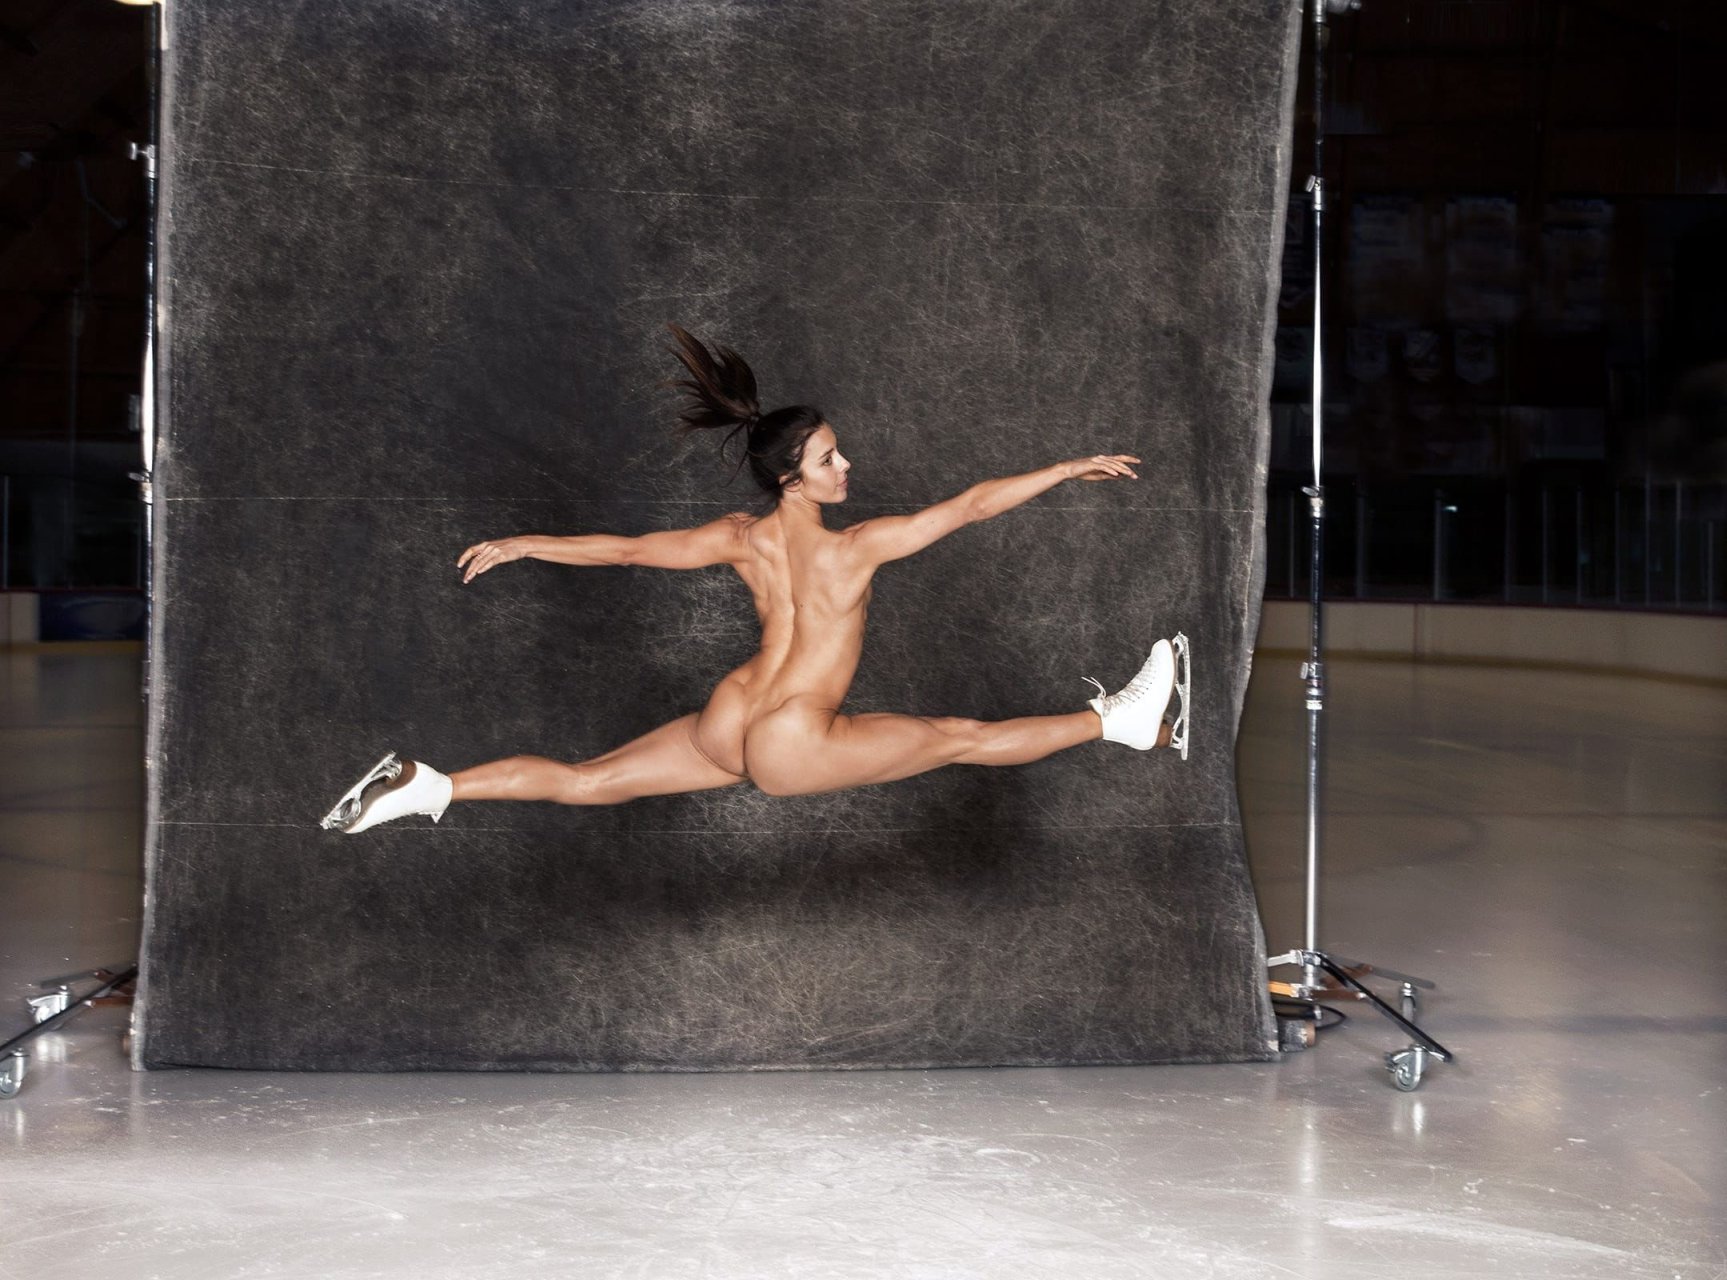 Naked figure skaters - 🧡 Naked women on skates :: Tv-ecp.eu.